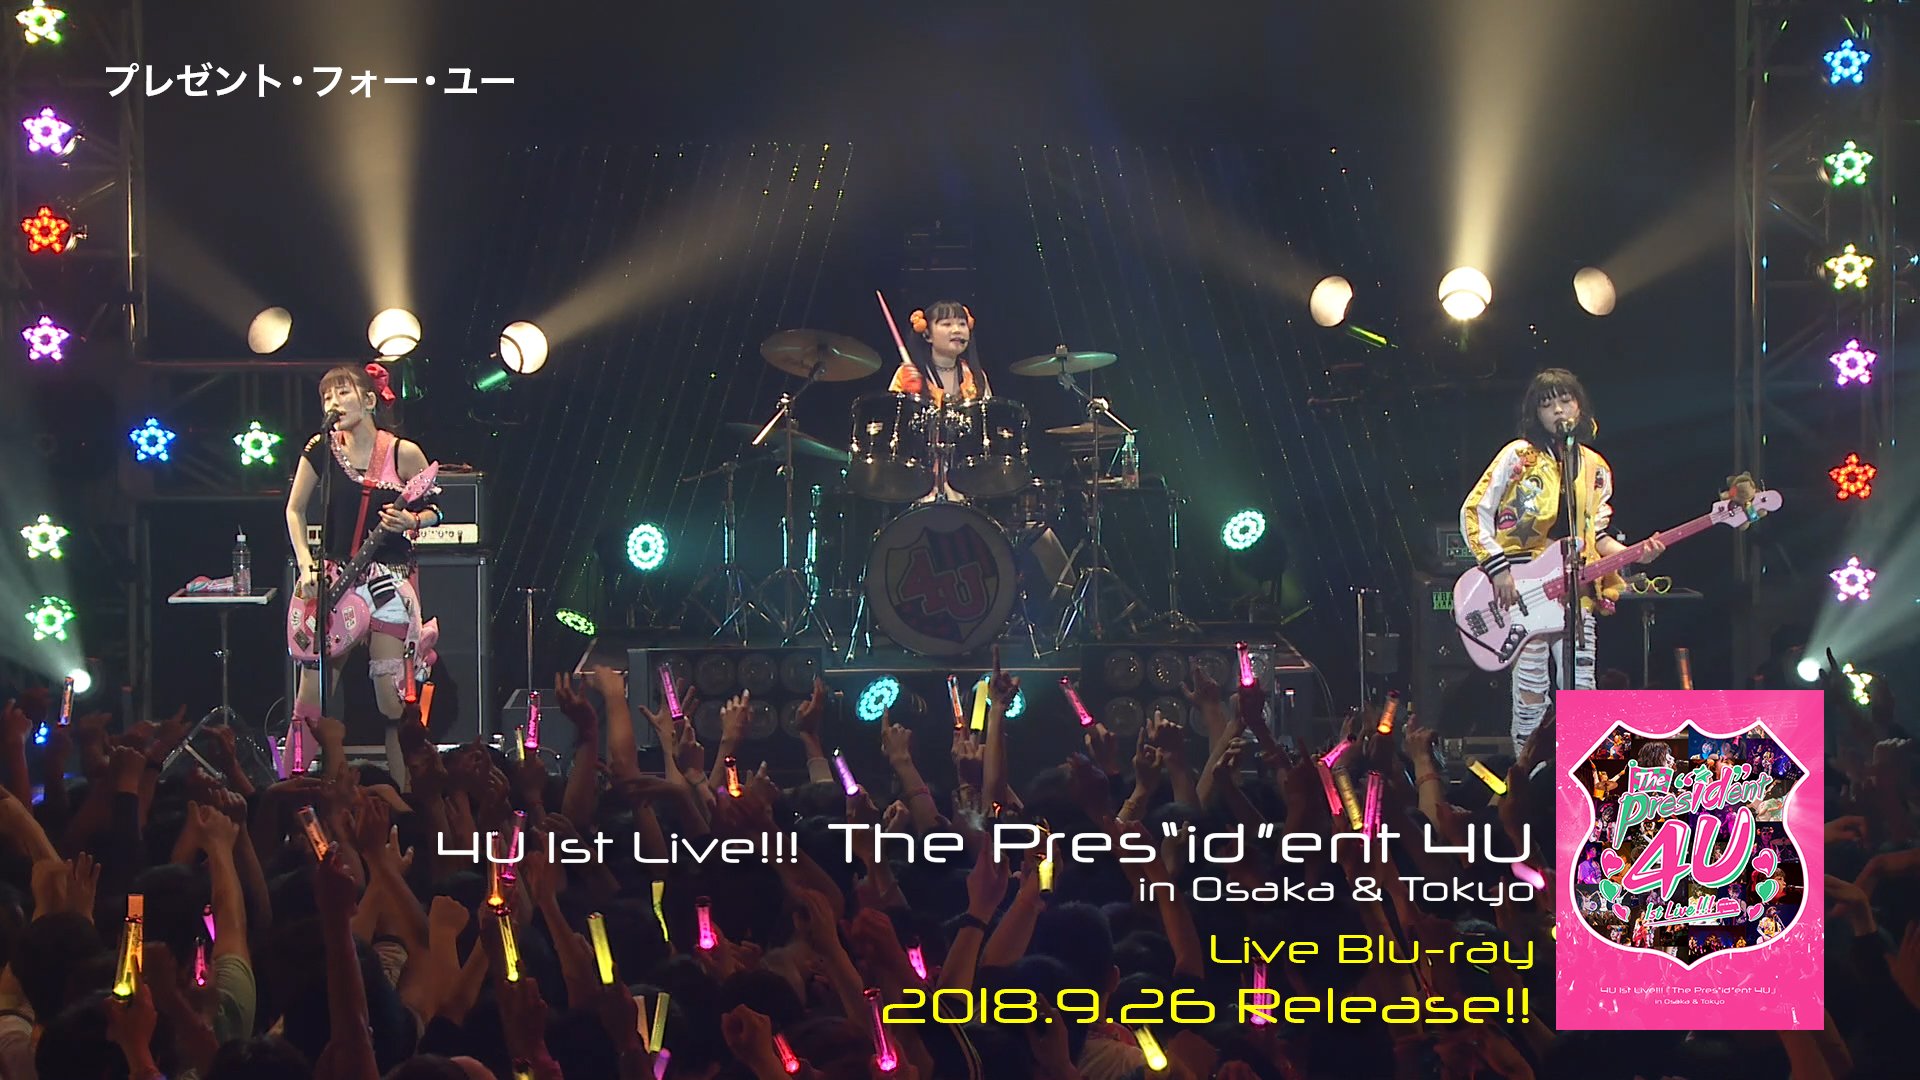 4U Live Blu-ray『4U 1st Live!!!「The Pres“id”ent 4U」in Osaka & Tokyo』Trailer